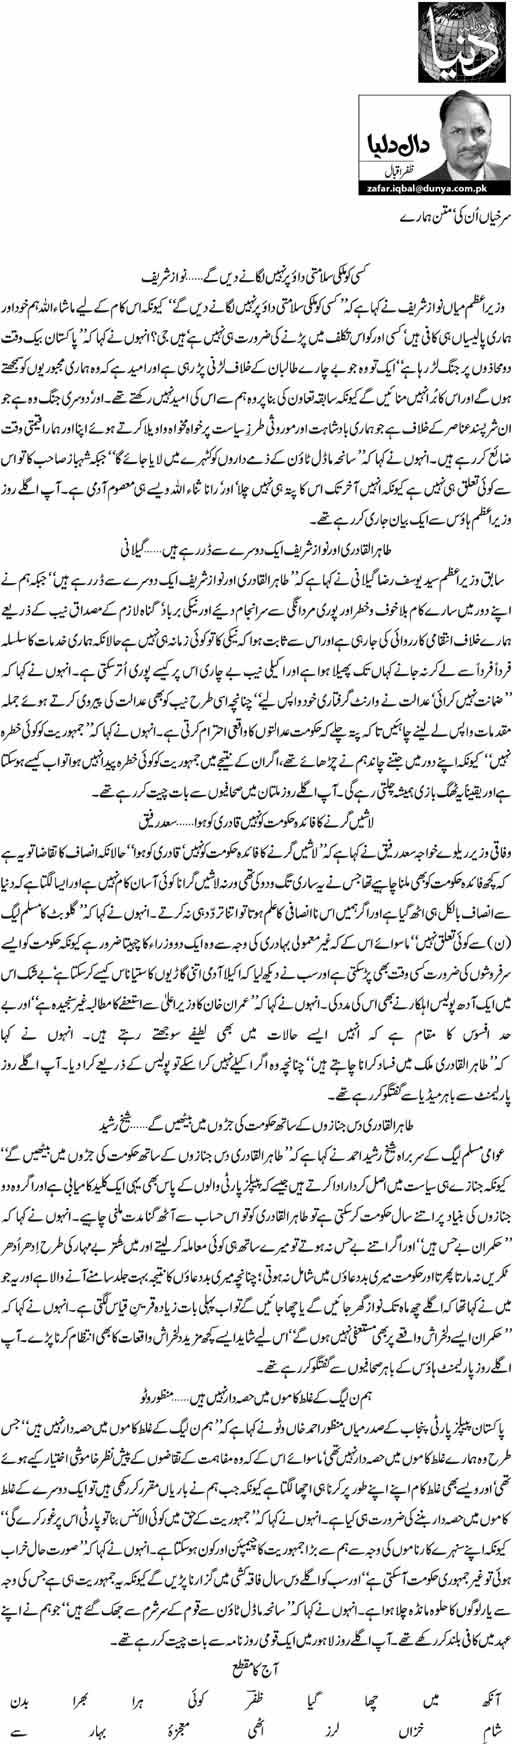 Print Media Coverage Daily Dunya - Zafar Iqbal